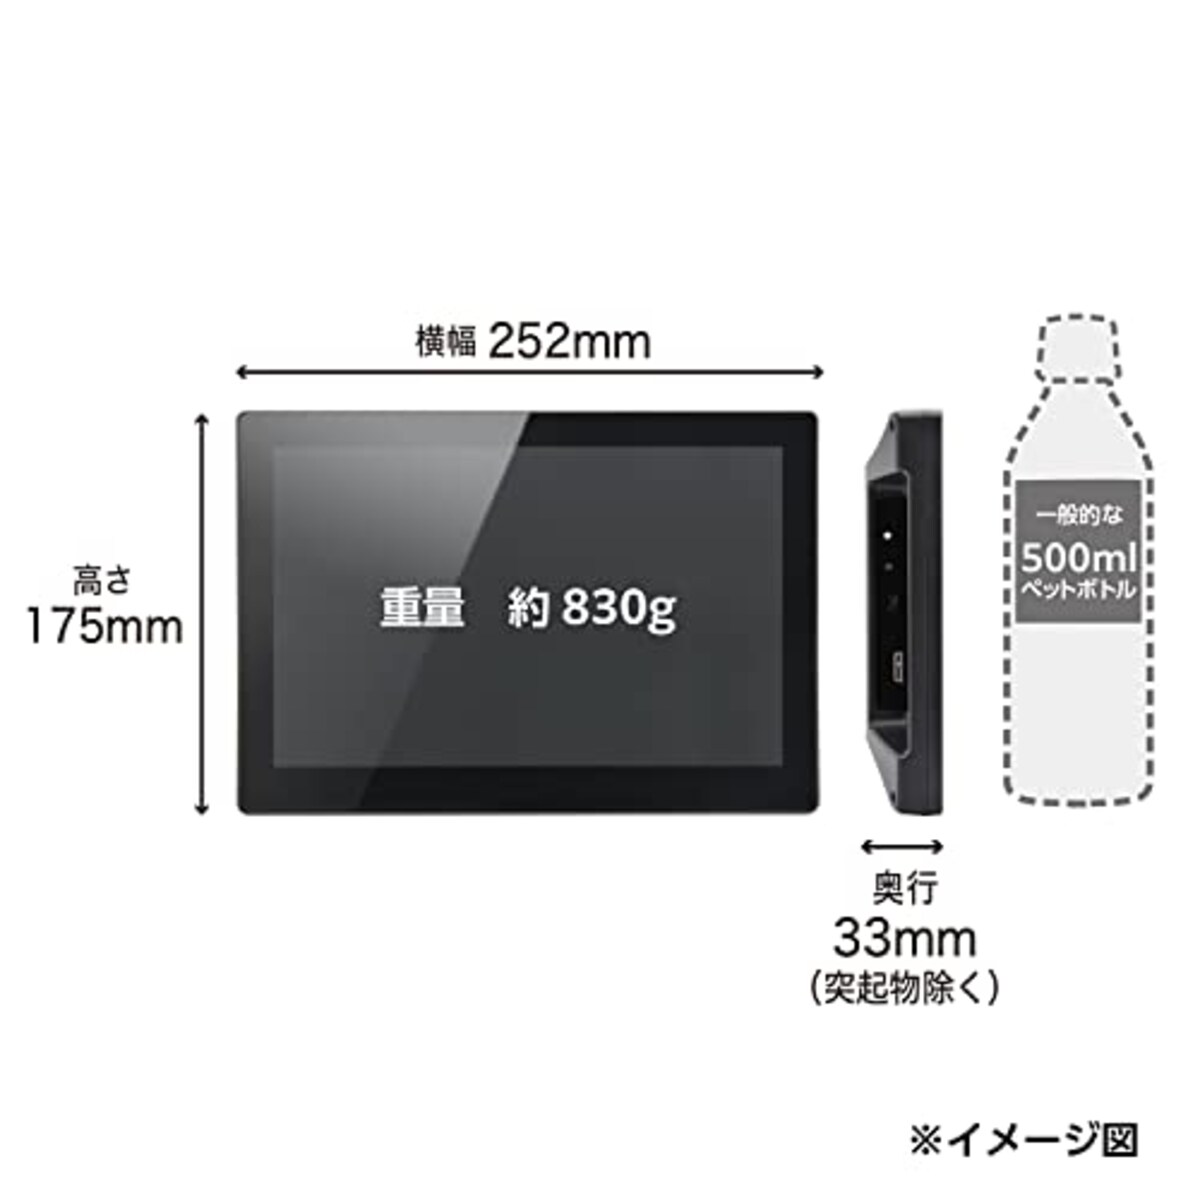  センチュリー USB入力専用 投影型静電容量方式10.1インチマルチタッチモニター LCD-10000UT2_FP画像4 